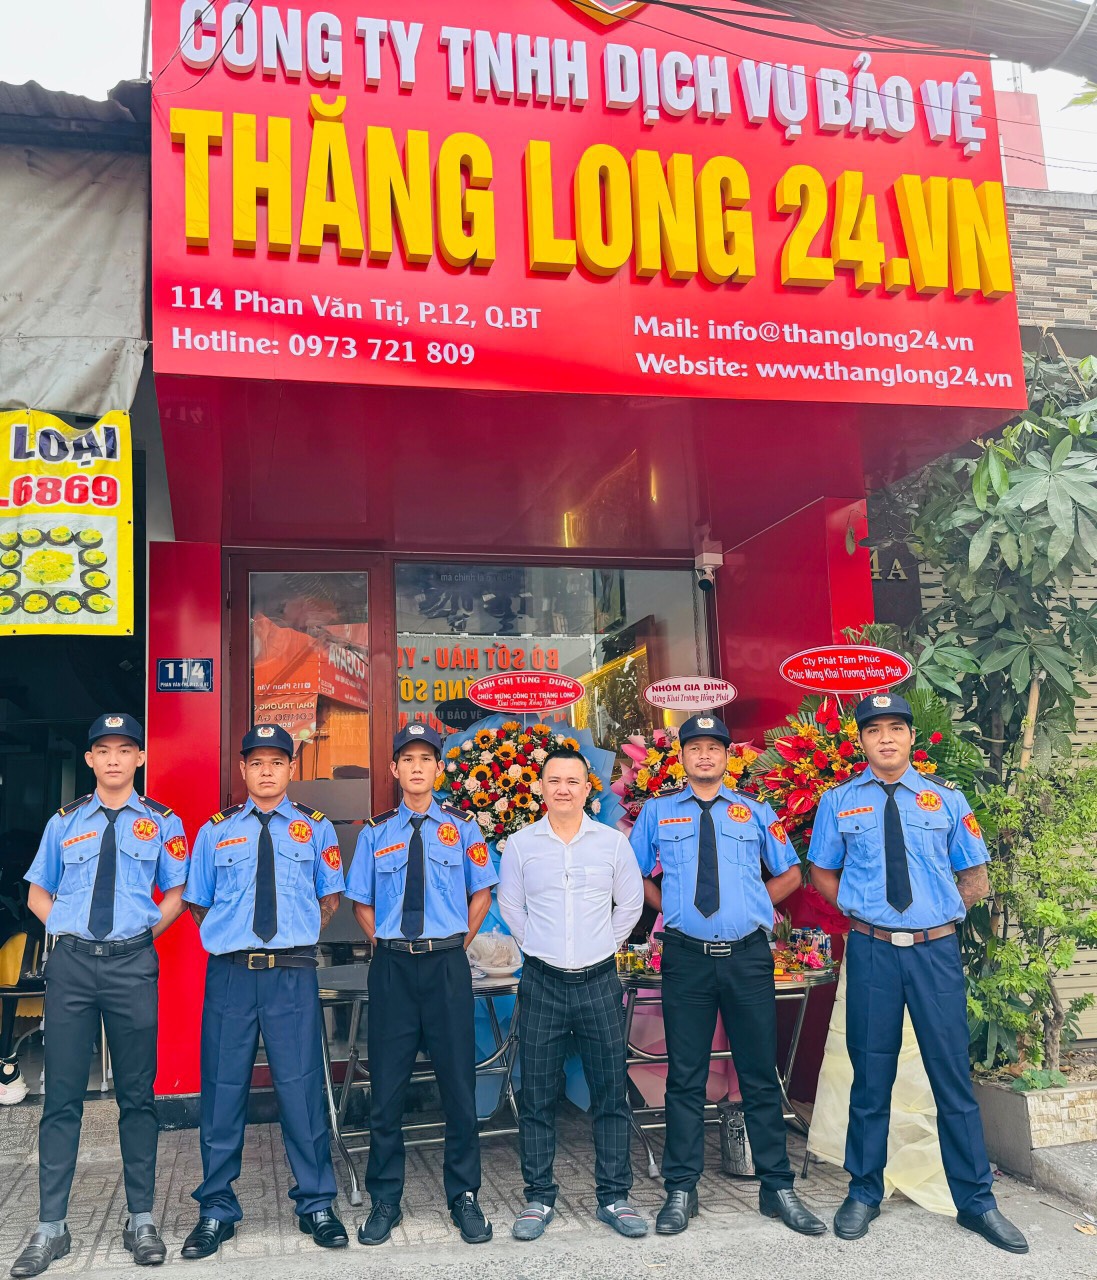 Công ty TNHH dịch vụ bảo vệ Thăng Long 24.vn